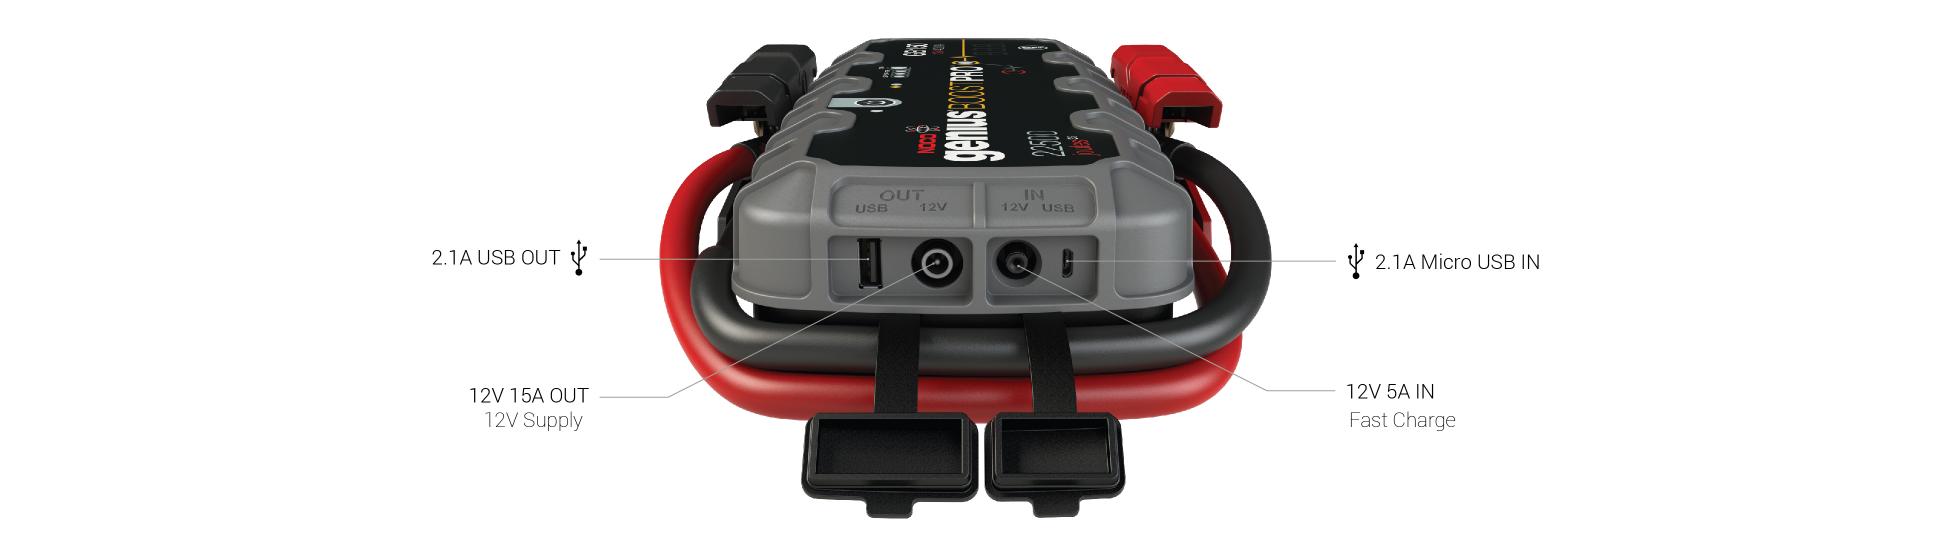 GB150 Jump Start Box USB Battery Booster 12V Power Pack